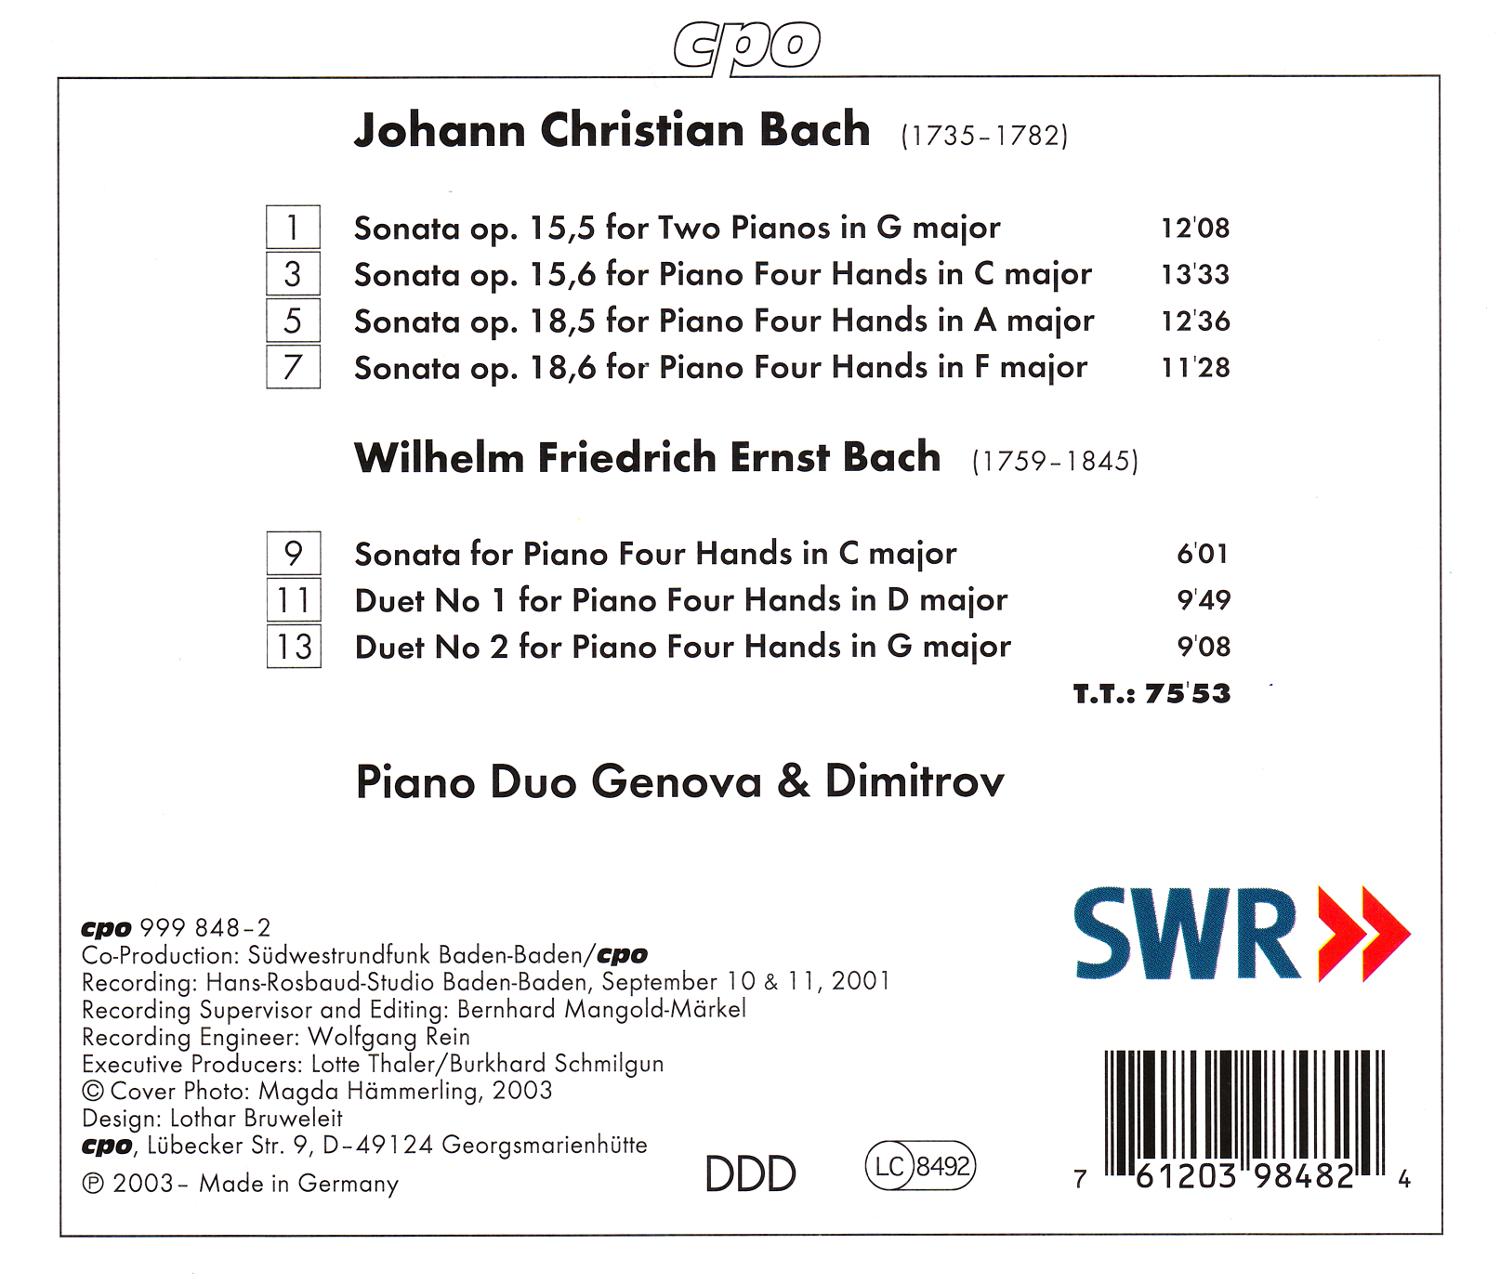 Johann Christian Bach • Sämtliche Werke für Klavierduo (cpo 999 848-2) | Back Inlay